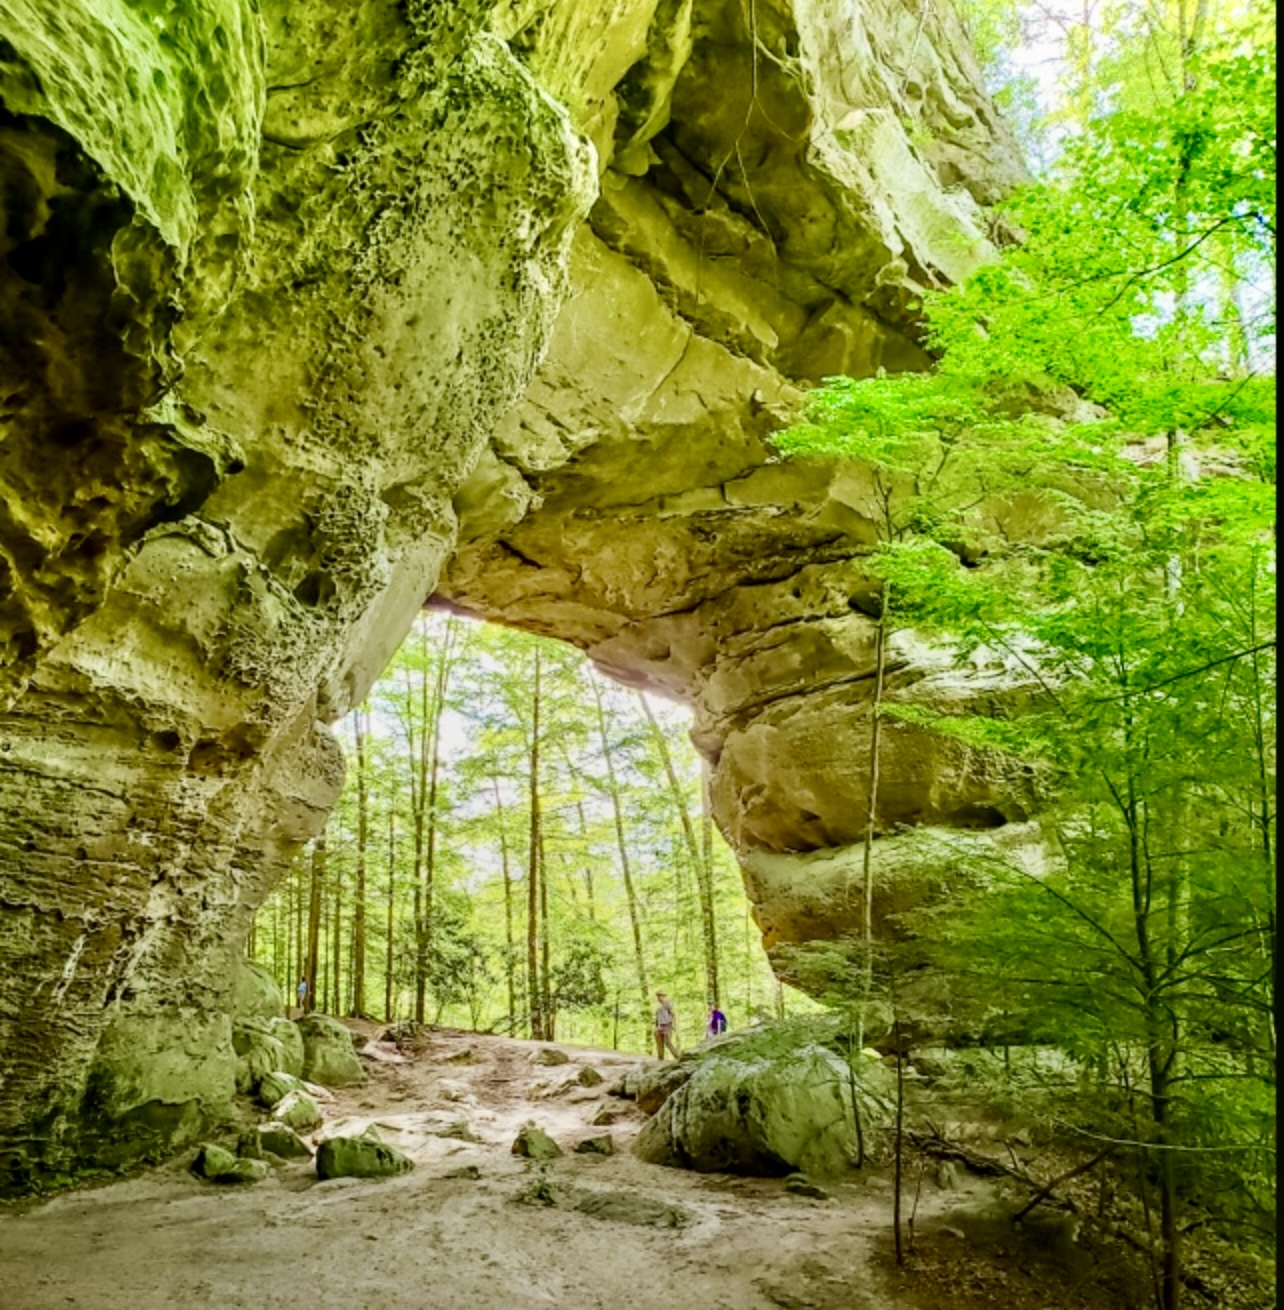 Les Étsts du Sud des É.U. offre une grande nature à découvrir. Une grande arche rocheuse dans les bois, parfaite pour une visite.